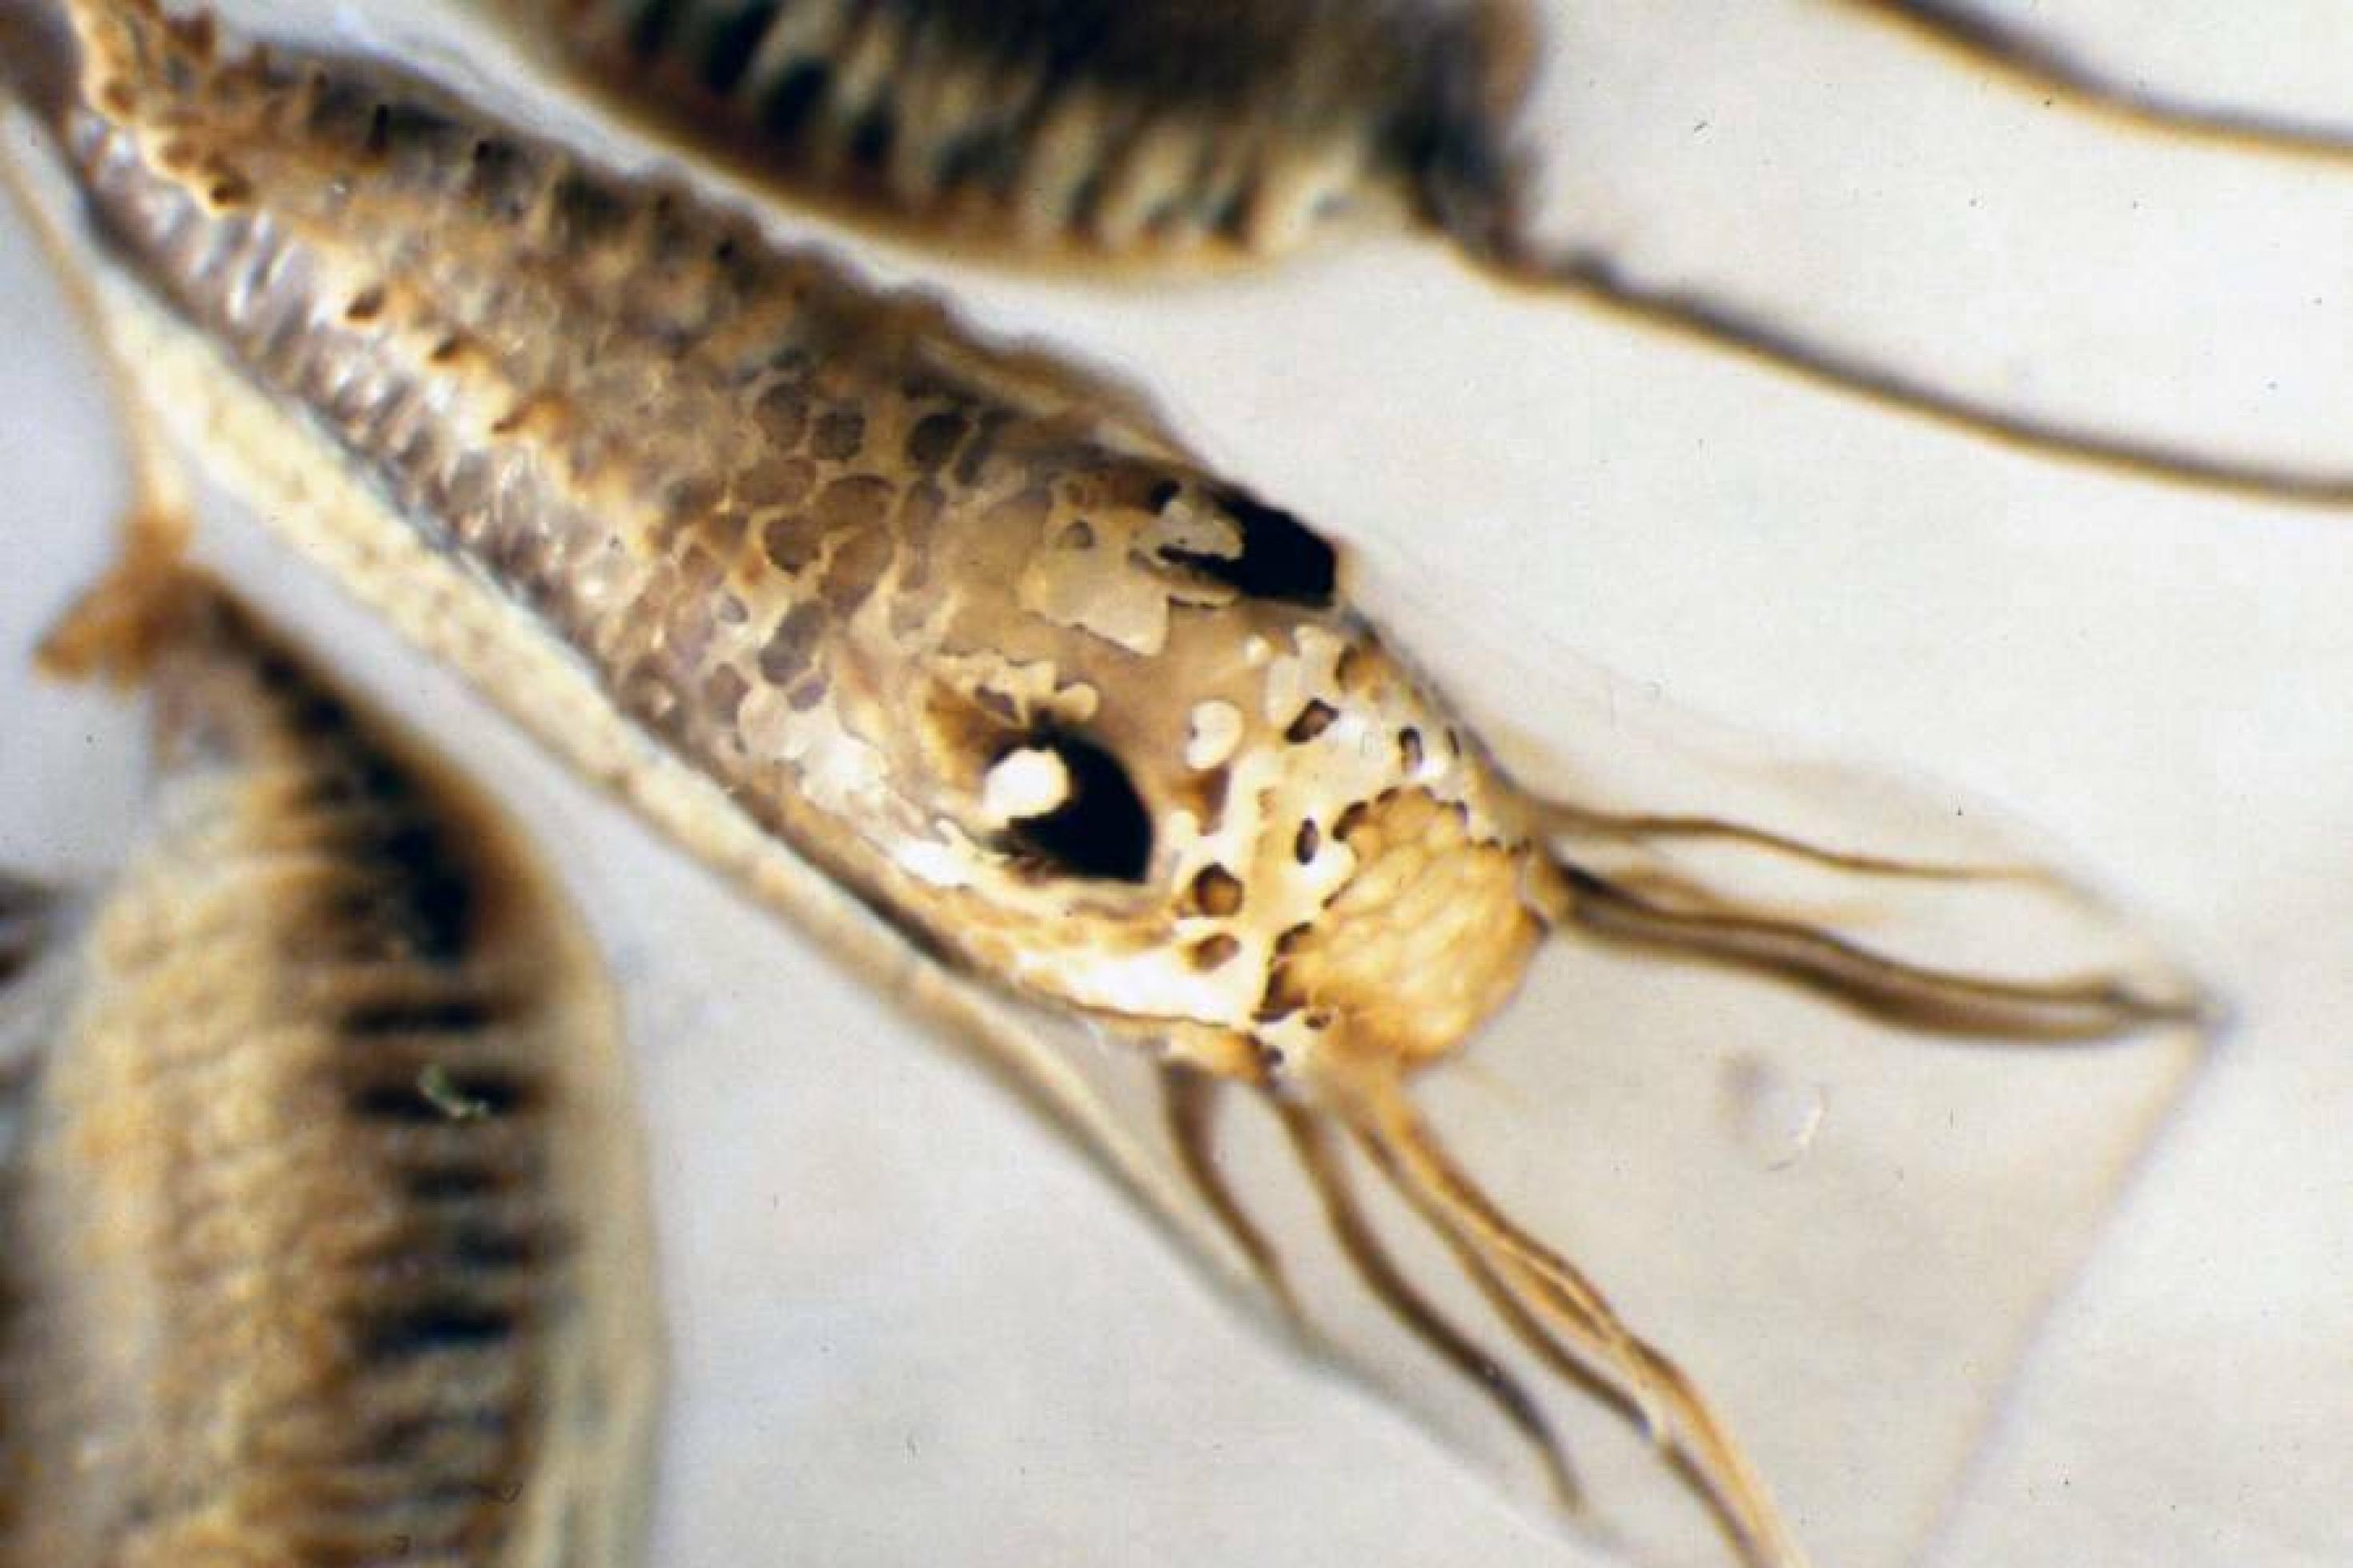 Ein täuschend echtes Insekt mit großen Augen und Beinen, das aber auf ein Schleimpaket gemalt ist, in dem sich eine Muschelbrut verbirgt.